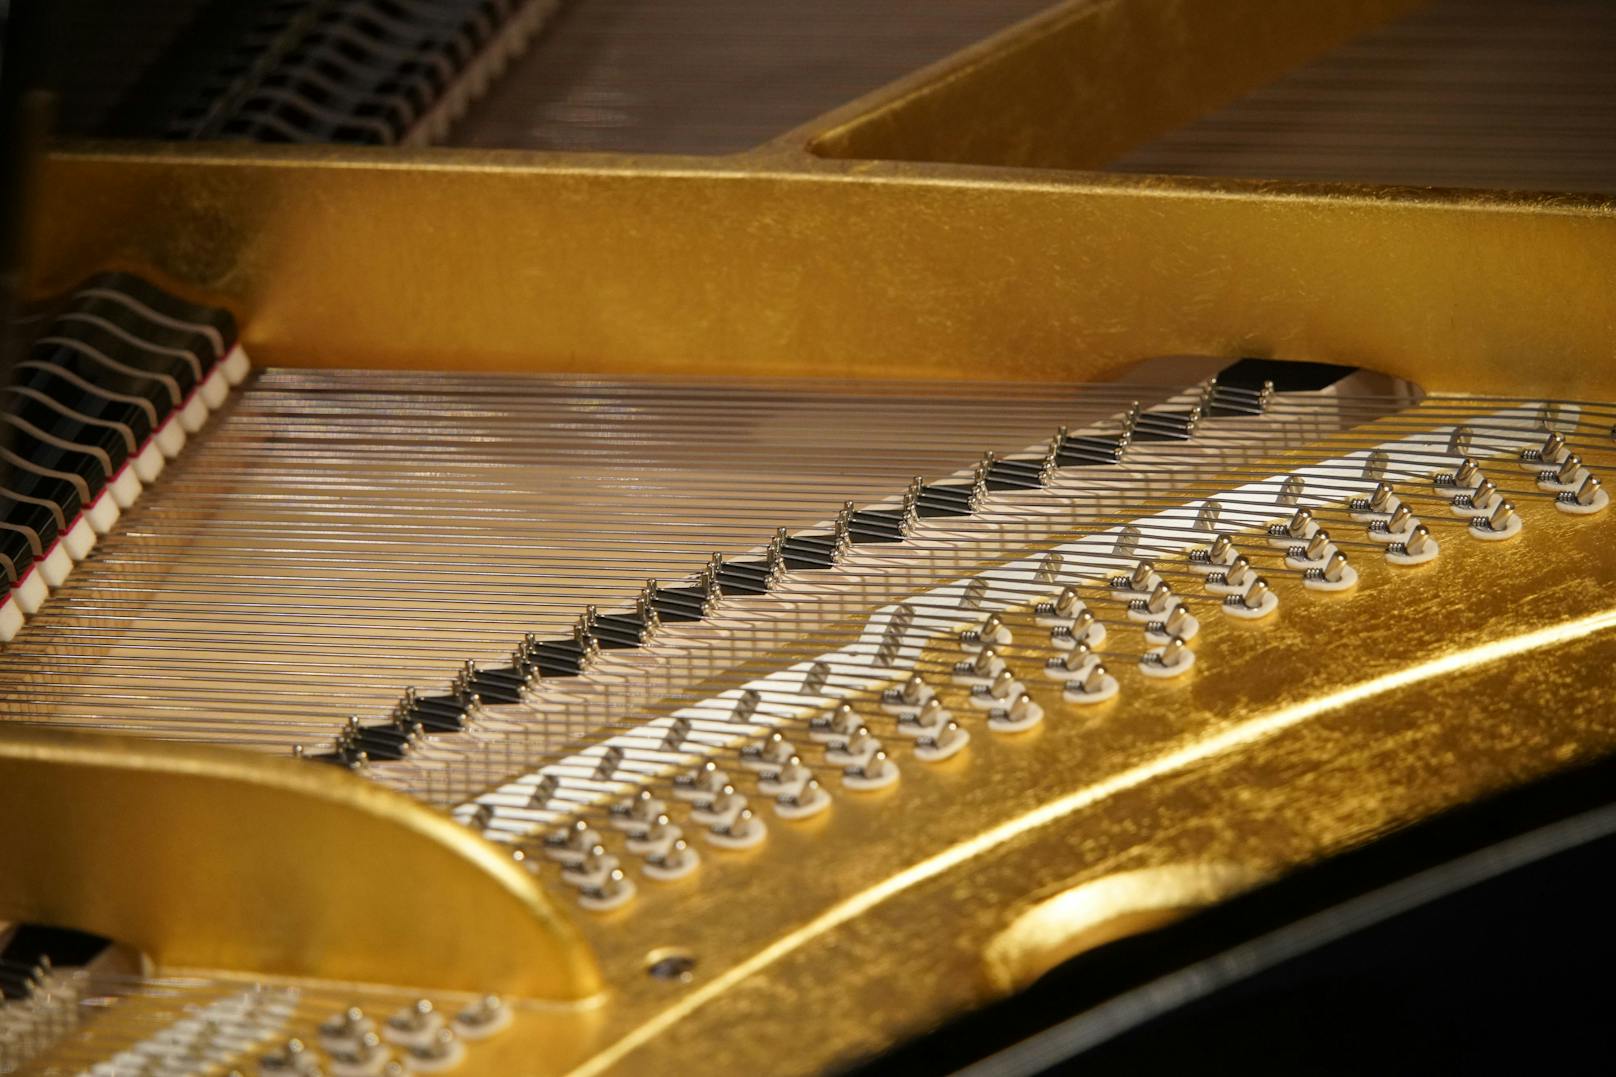 200 Jahre Klavierbautradition mit modernsten technologischen Möglichkeiten - das zeichnet das Traditionsunternehmen "Bösendorfer" aus.